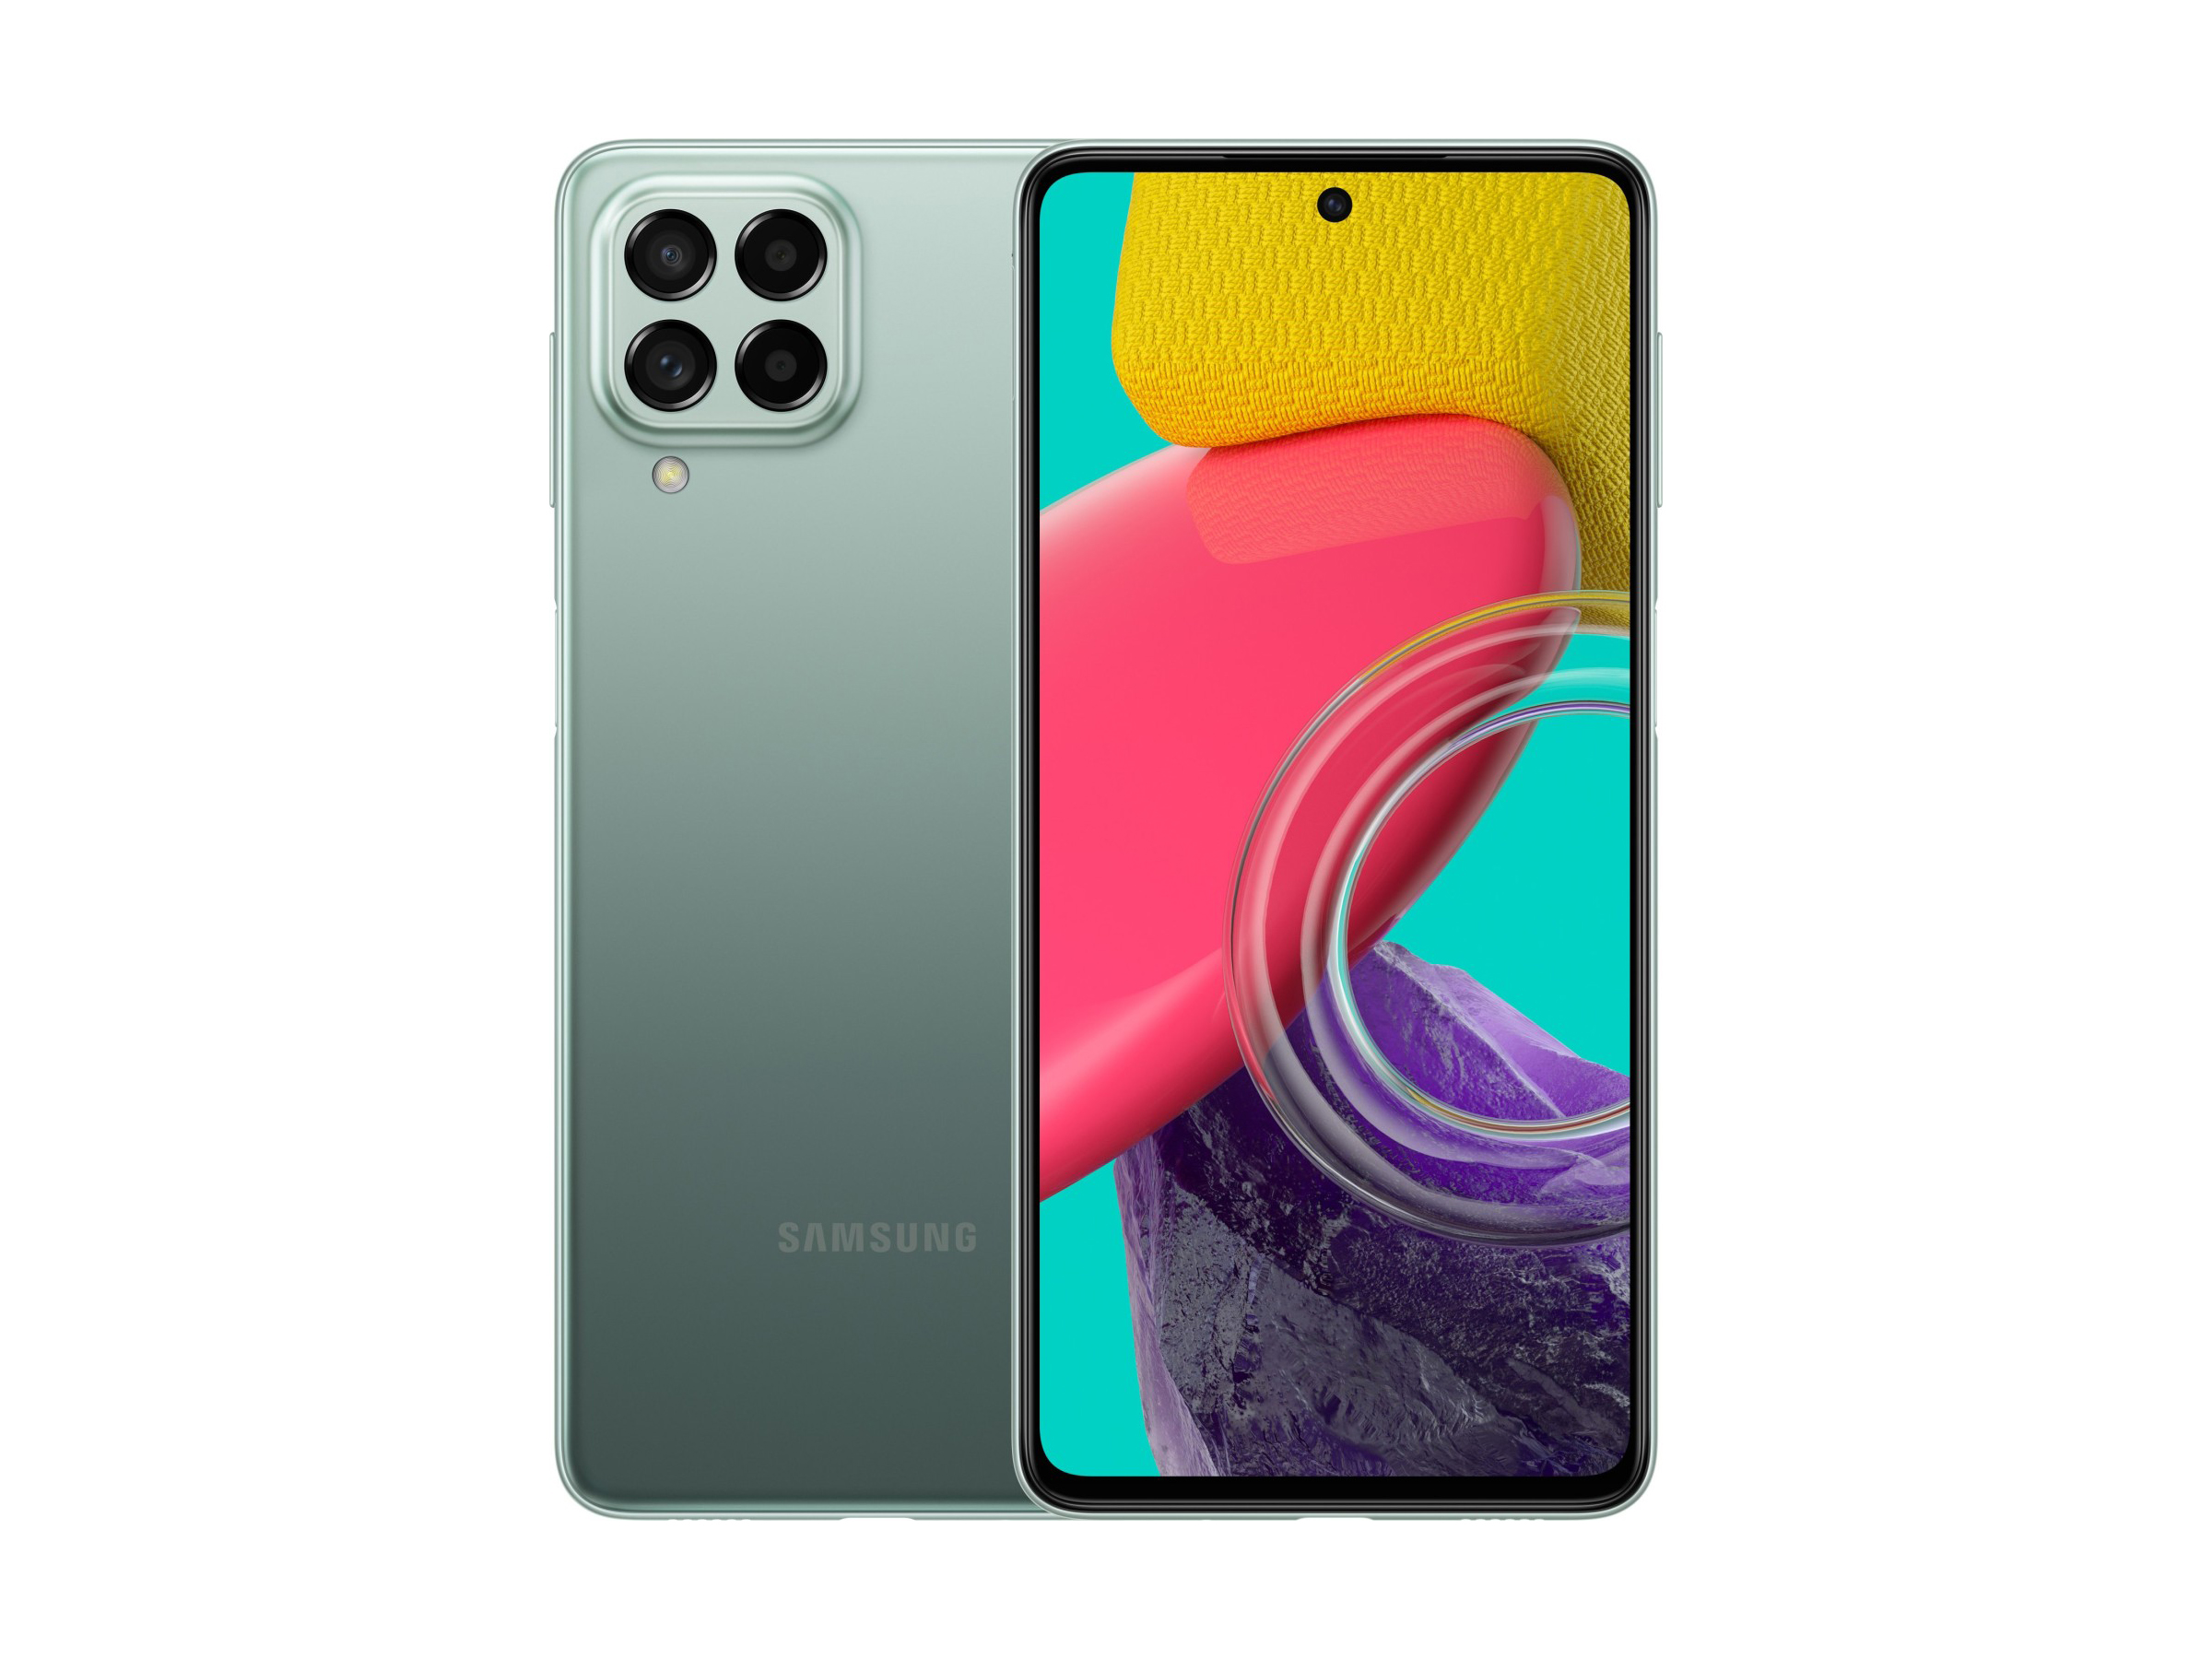 Análisis del smartphone Samsung Galaxy M53 5G: Un teléfono de gama media  con problemas de orientación - Notebookcheck.org